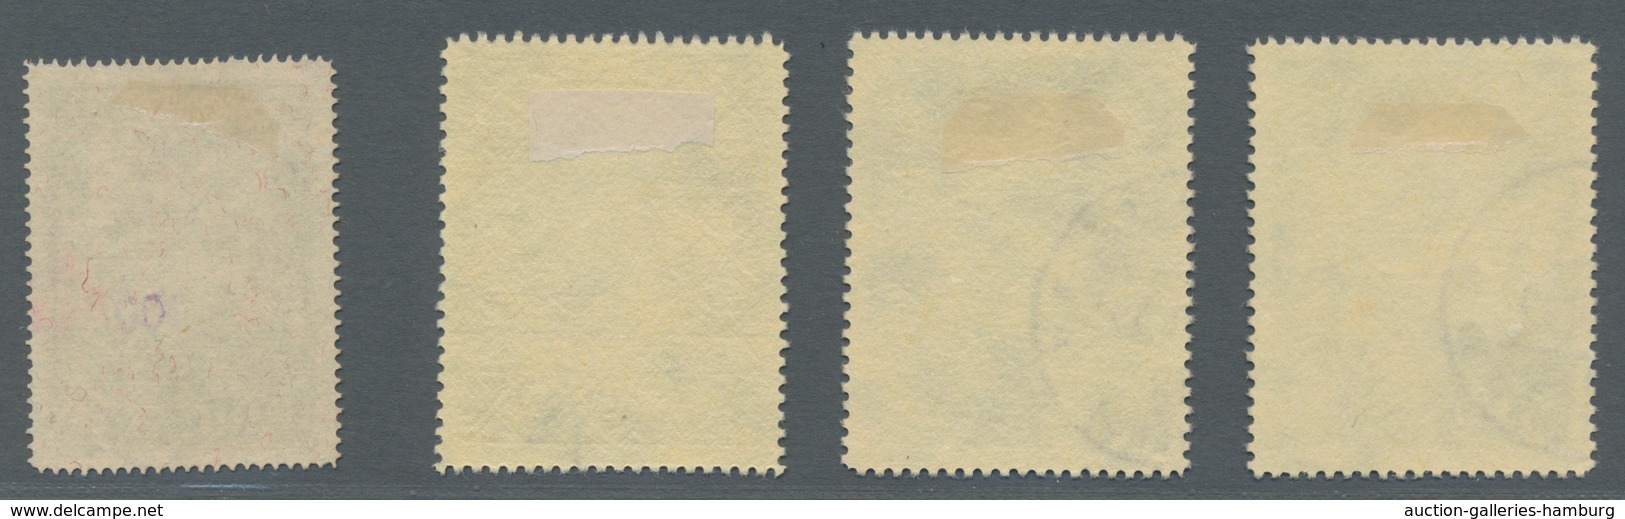 Liechtenstein: 1939 Und 1952 - Freimarkenausgaben Wappen / Franz Josef II. Bzw. Burg Vaduz Gestempel - Used Stamps